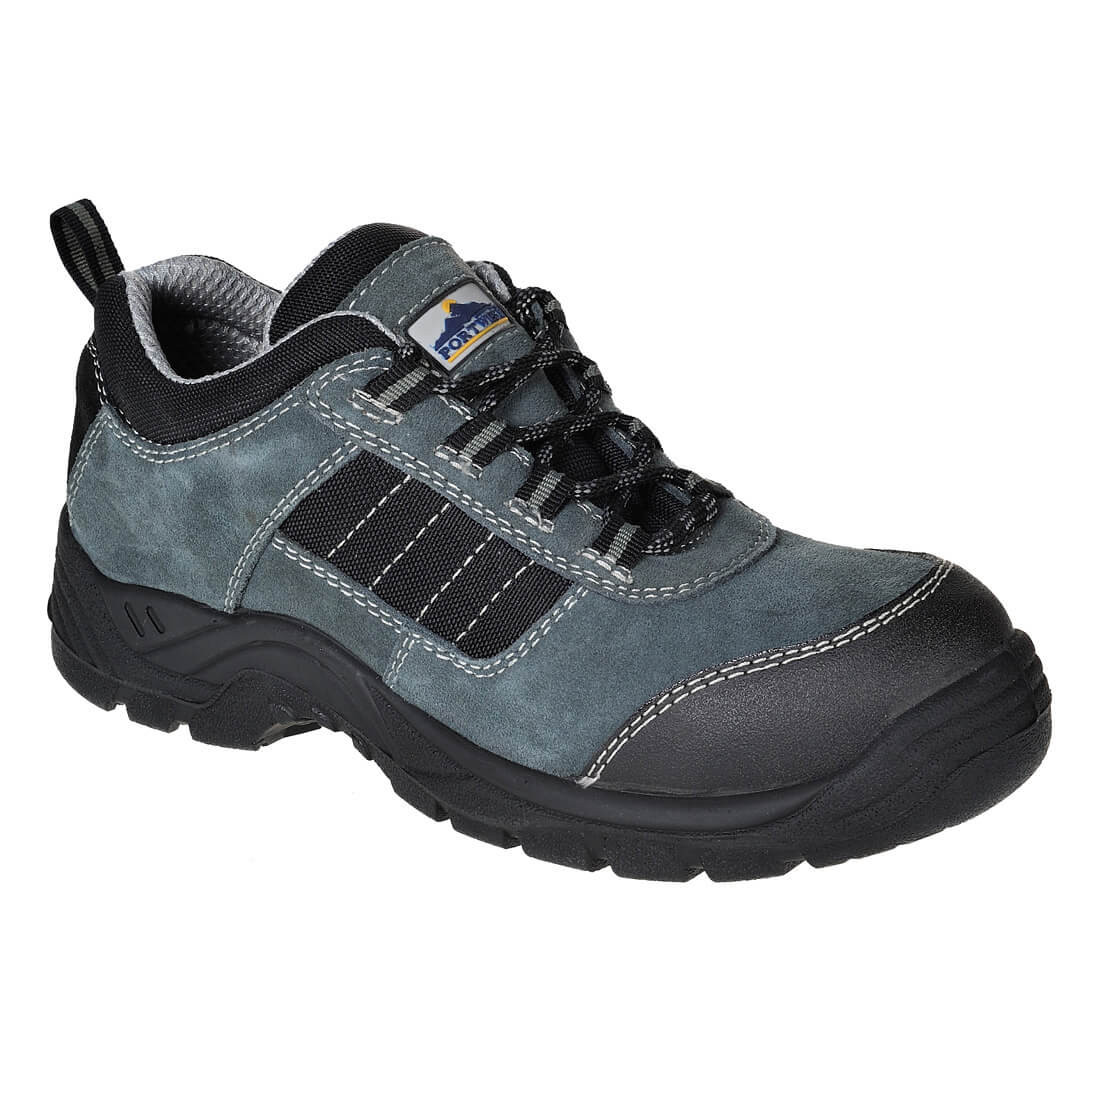 Tennis trekking compositelite S1 - Les chaussures de protection